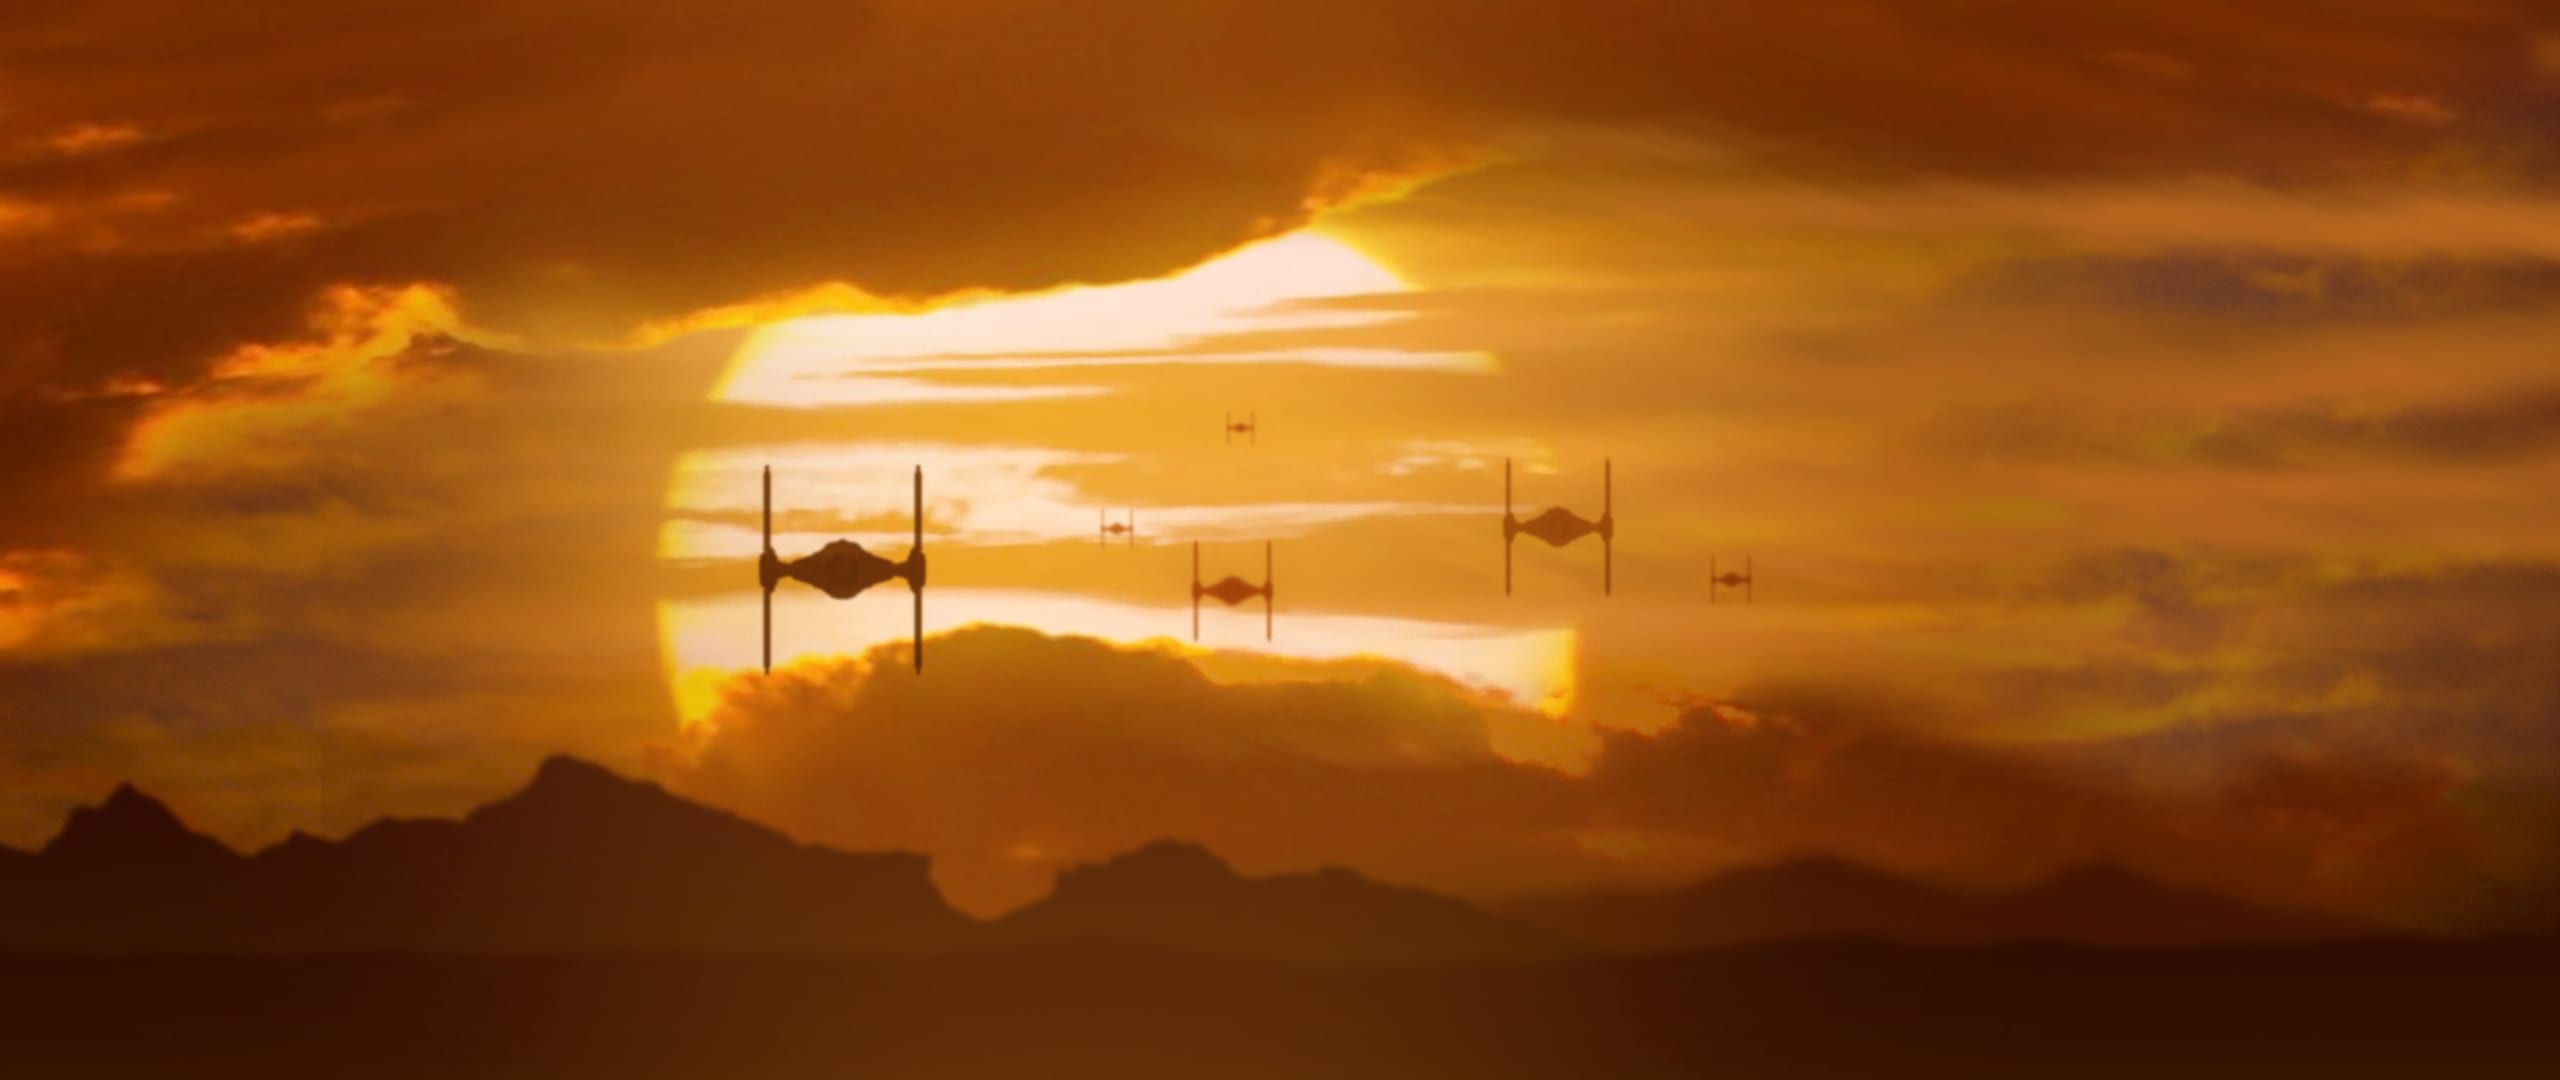 Star Wars Episodio IX: ¿Qué vendrá después?